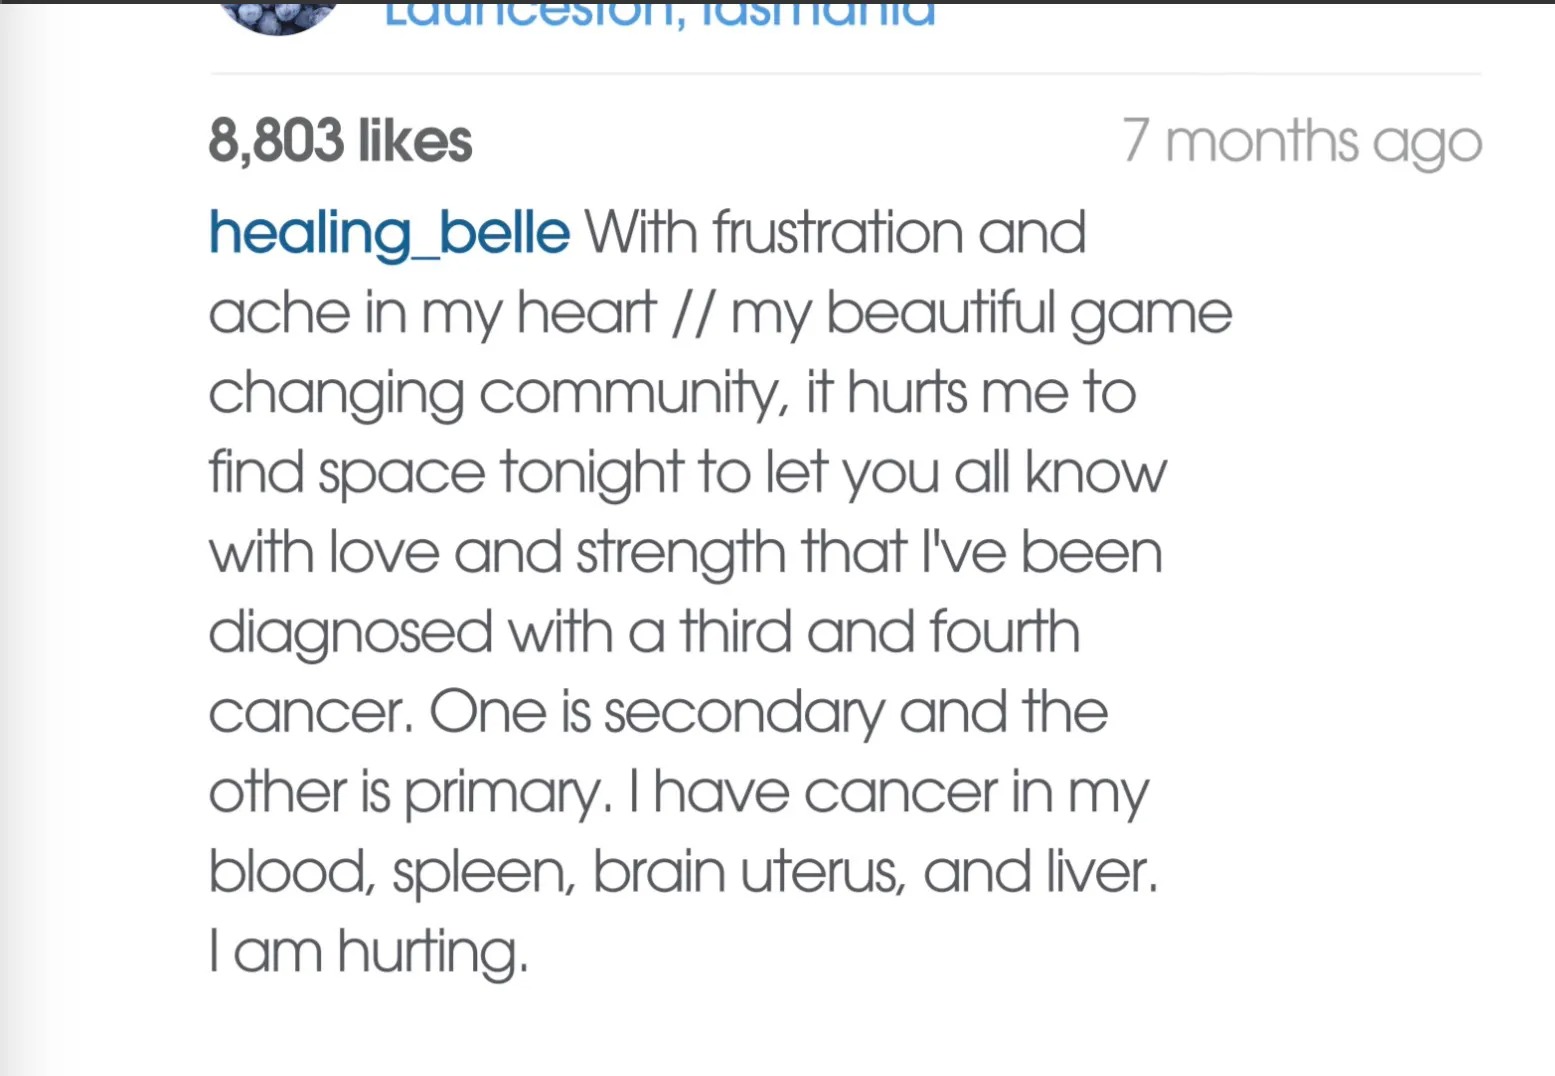 Belle scheint eine verzweifelte Krebsklage zu verfassen